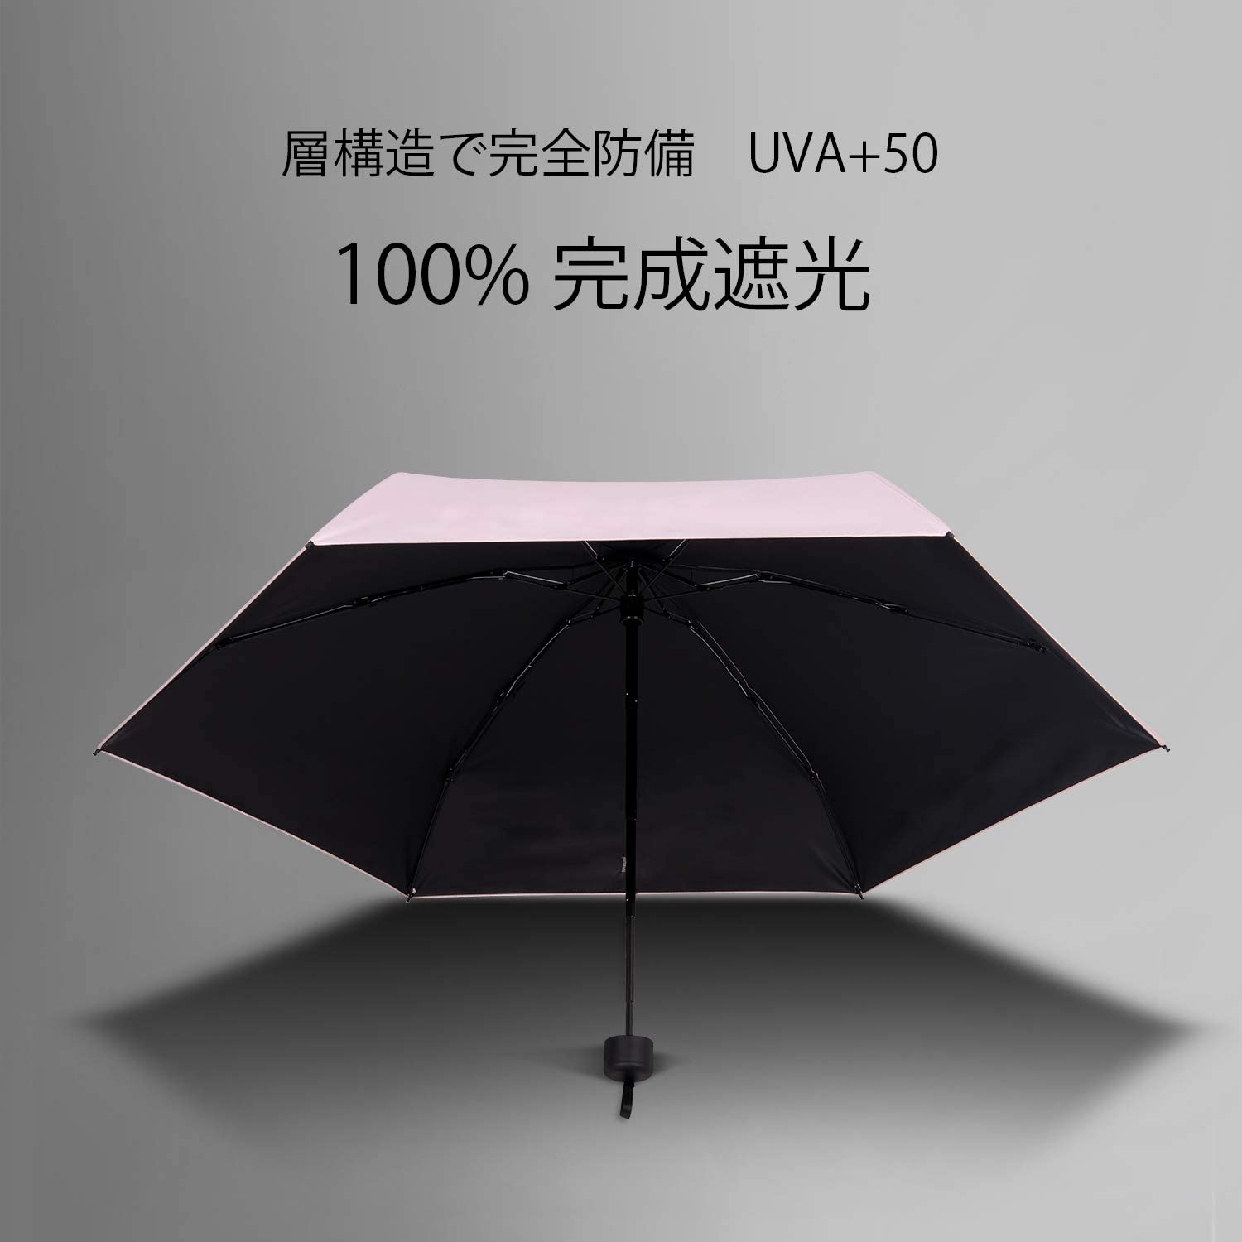 Adoric(アドリック) 晴雨兼用 折りたたみ傘の商品画像サムネ4 